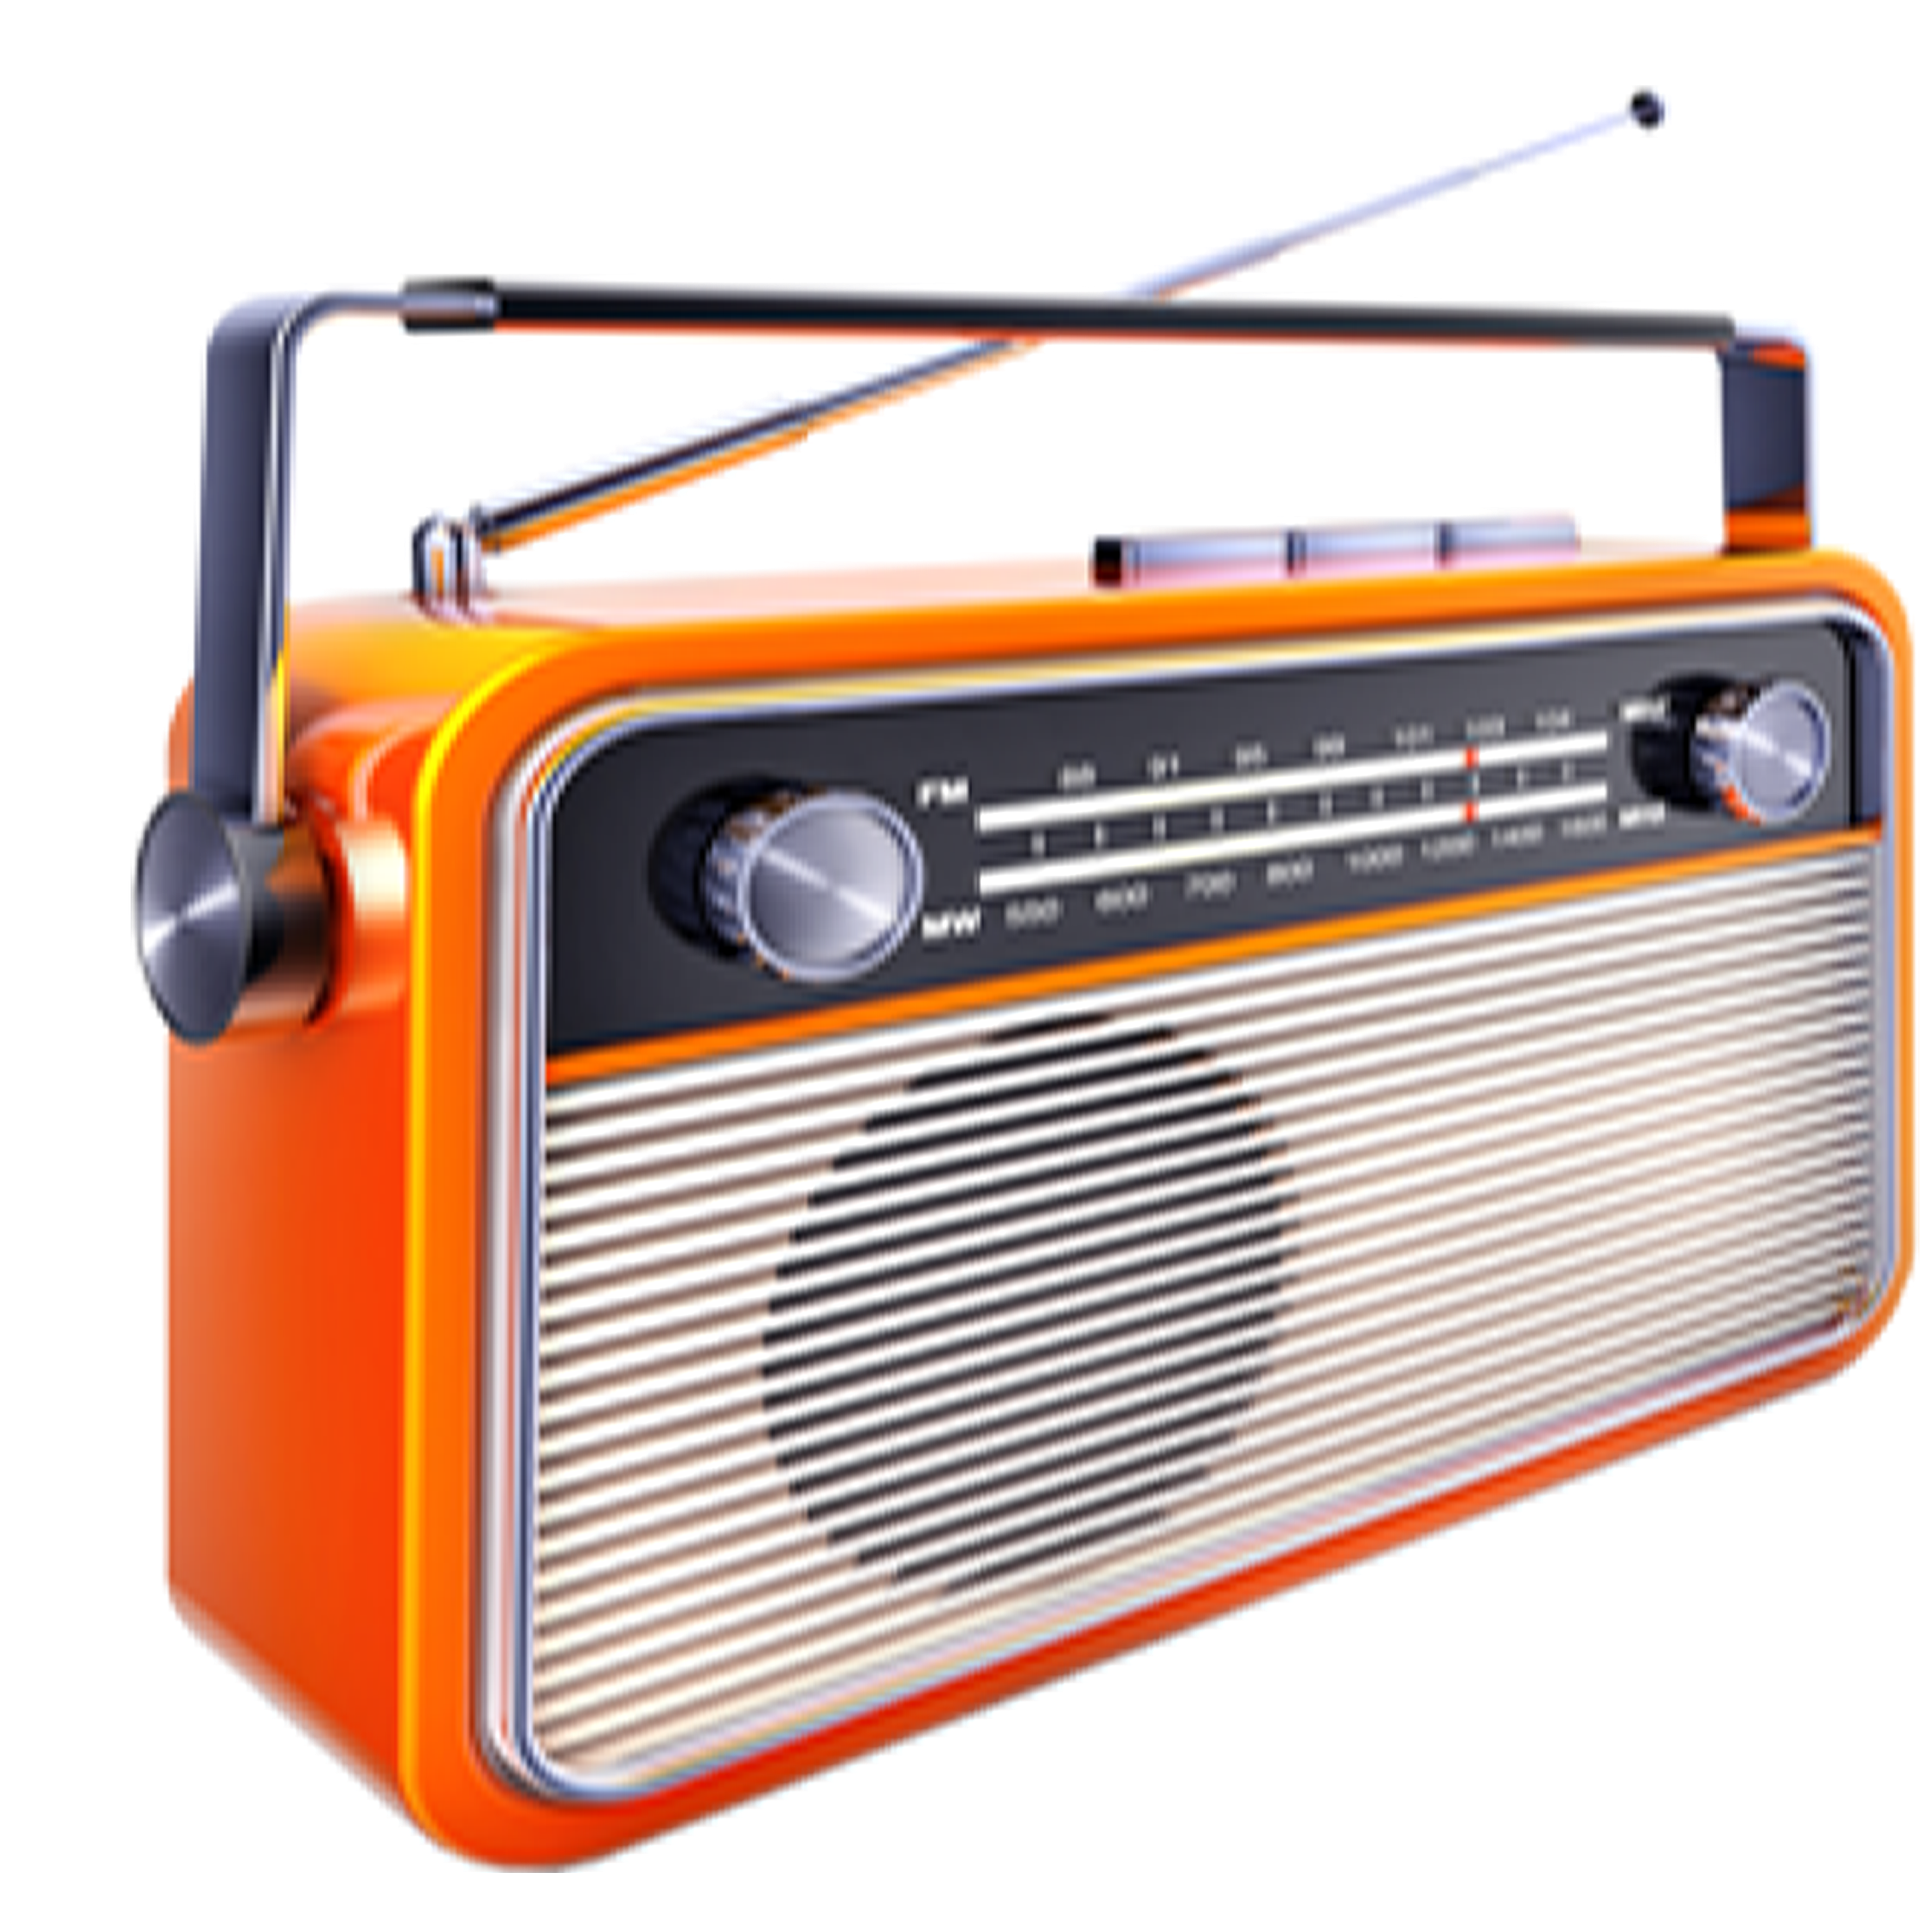 Rádio Dinâmica 98.1 FM